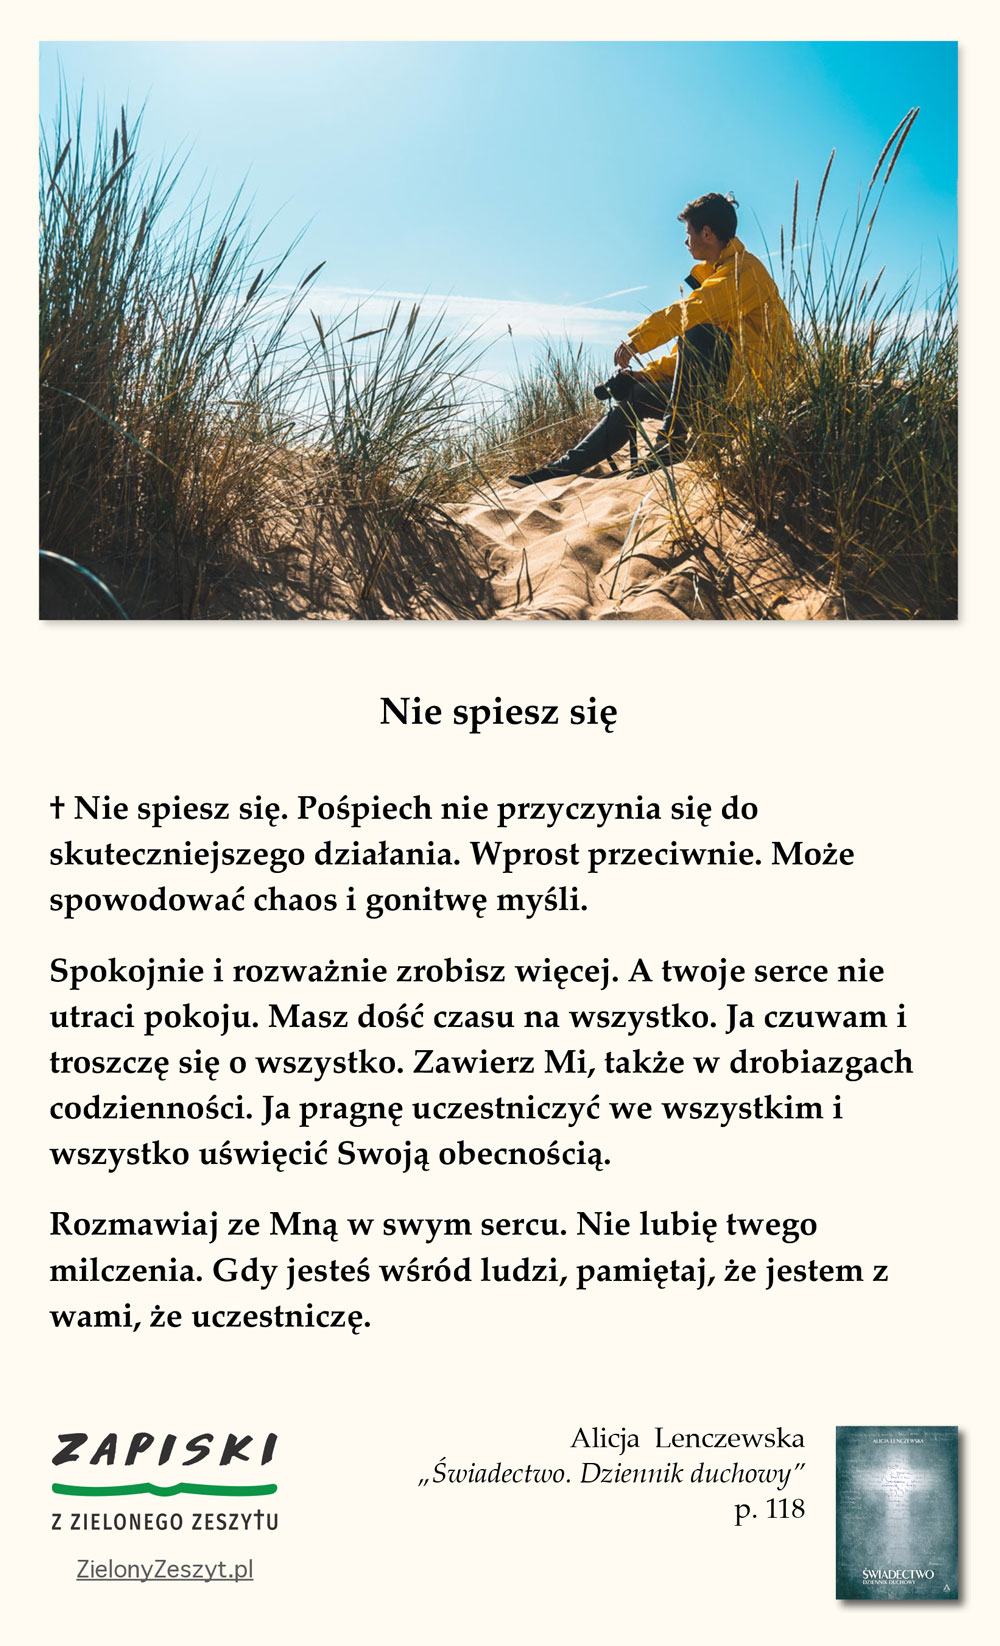 Alicja Lenczewska, „Świadectwo. Dziennik duchowy”, p. 118 (Nie spiesz się)